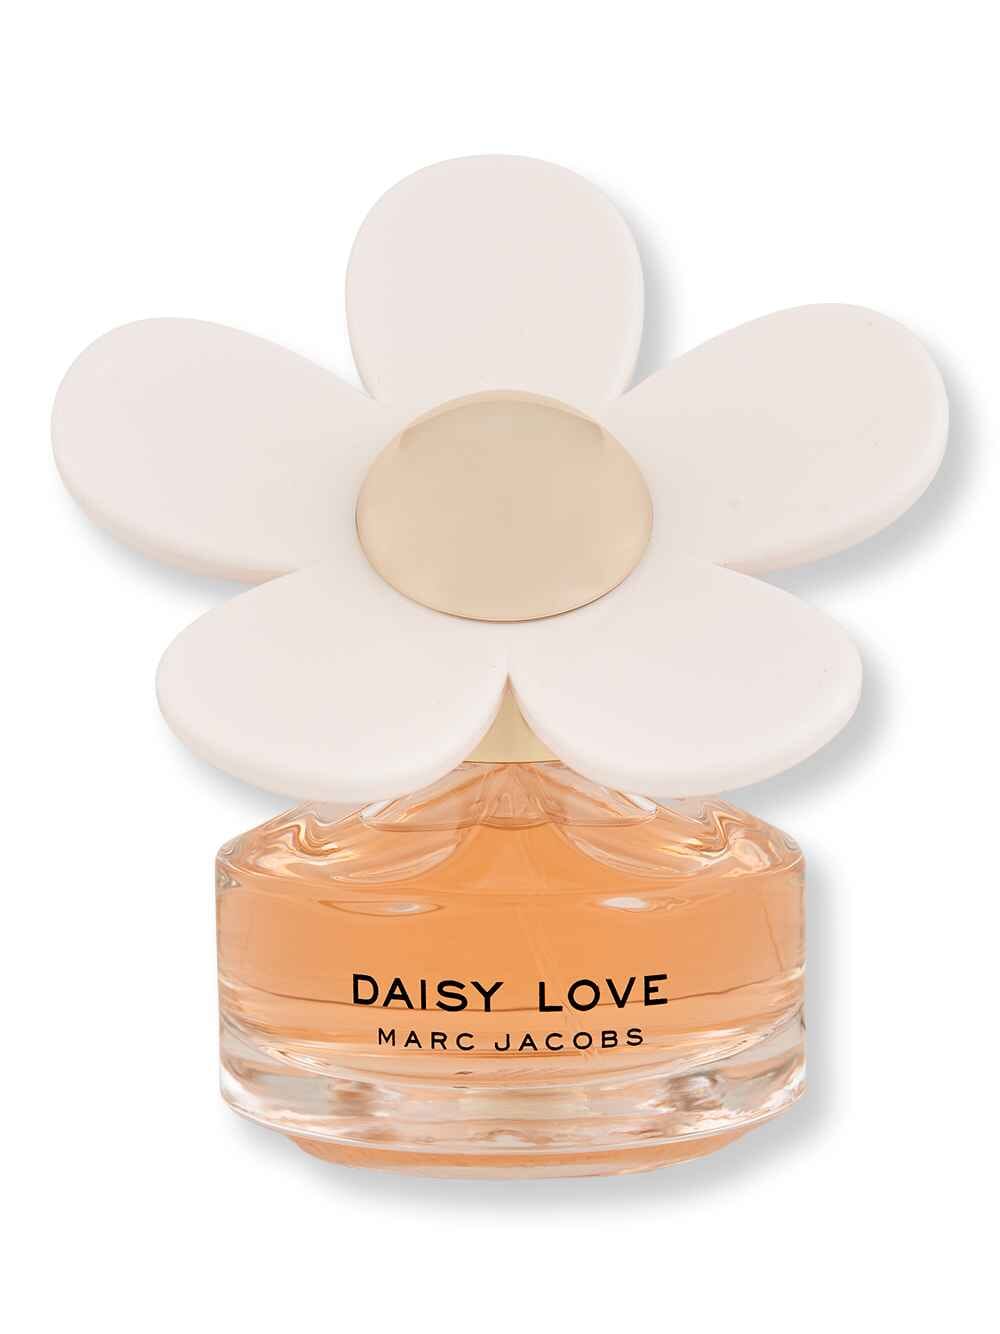 Marc Jacobs Marc Jacobs Daisy Love EDT 1.7 oz Perfume 